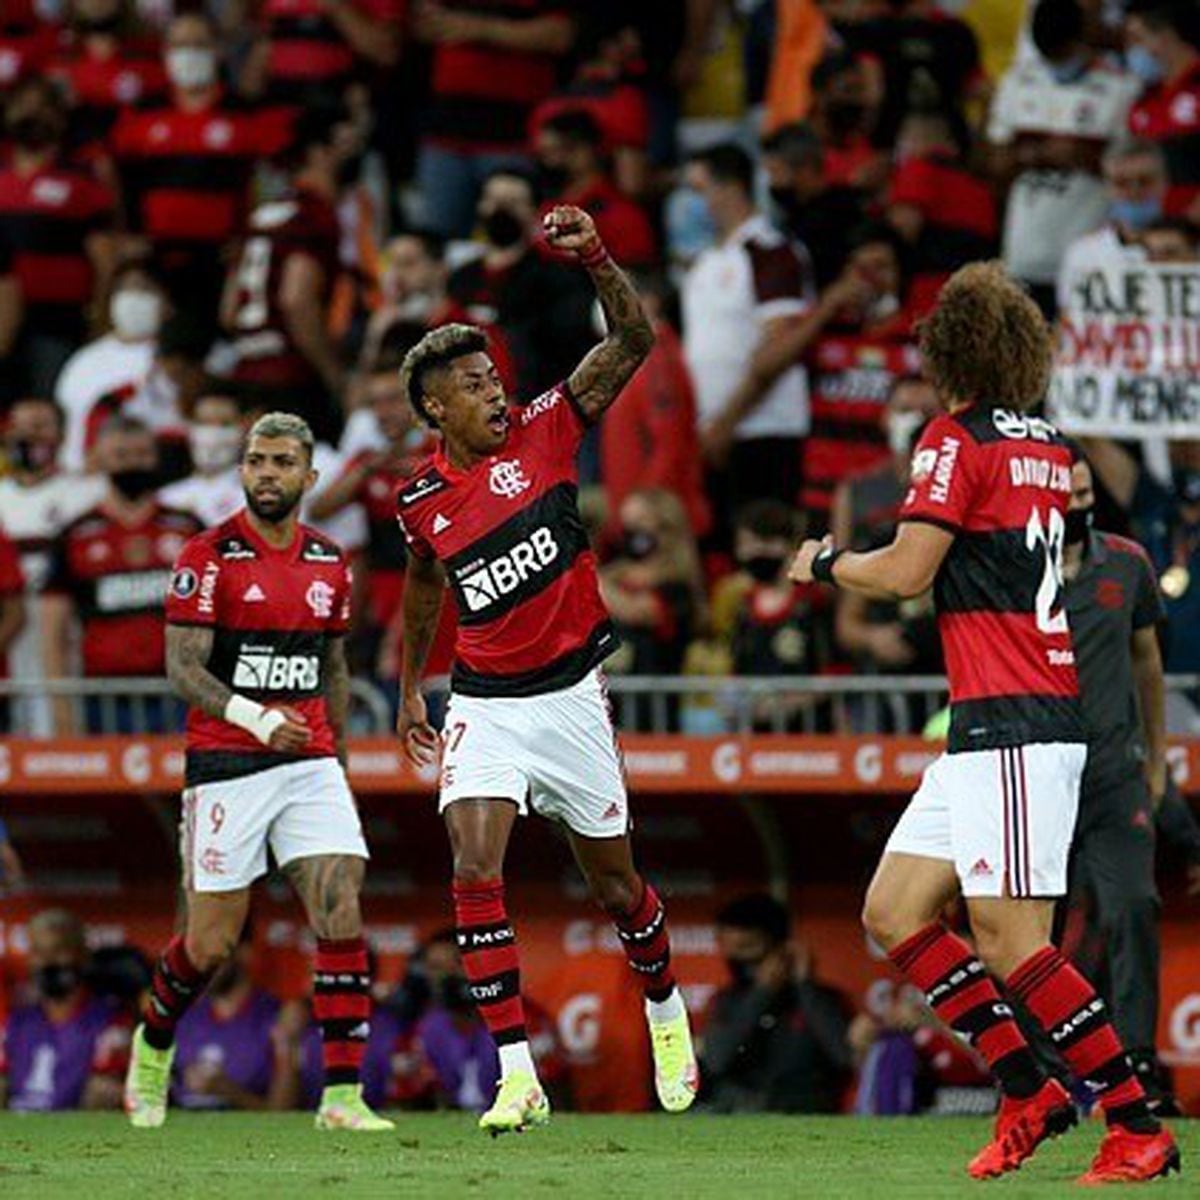 Renato Gaúcho celebra apoio da torcida do Flamengo ao jogador Isla